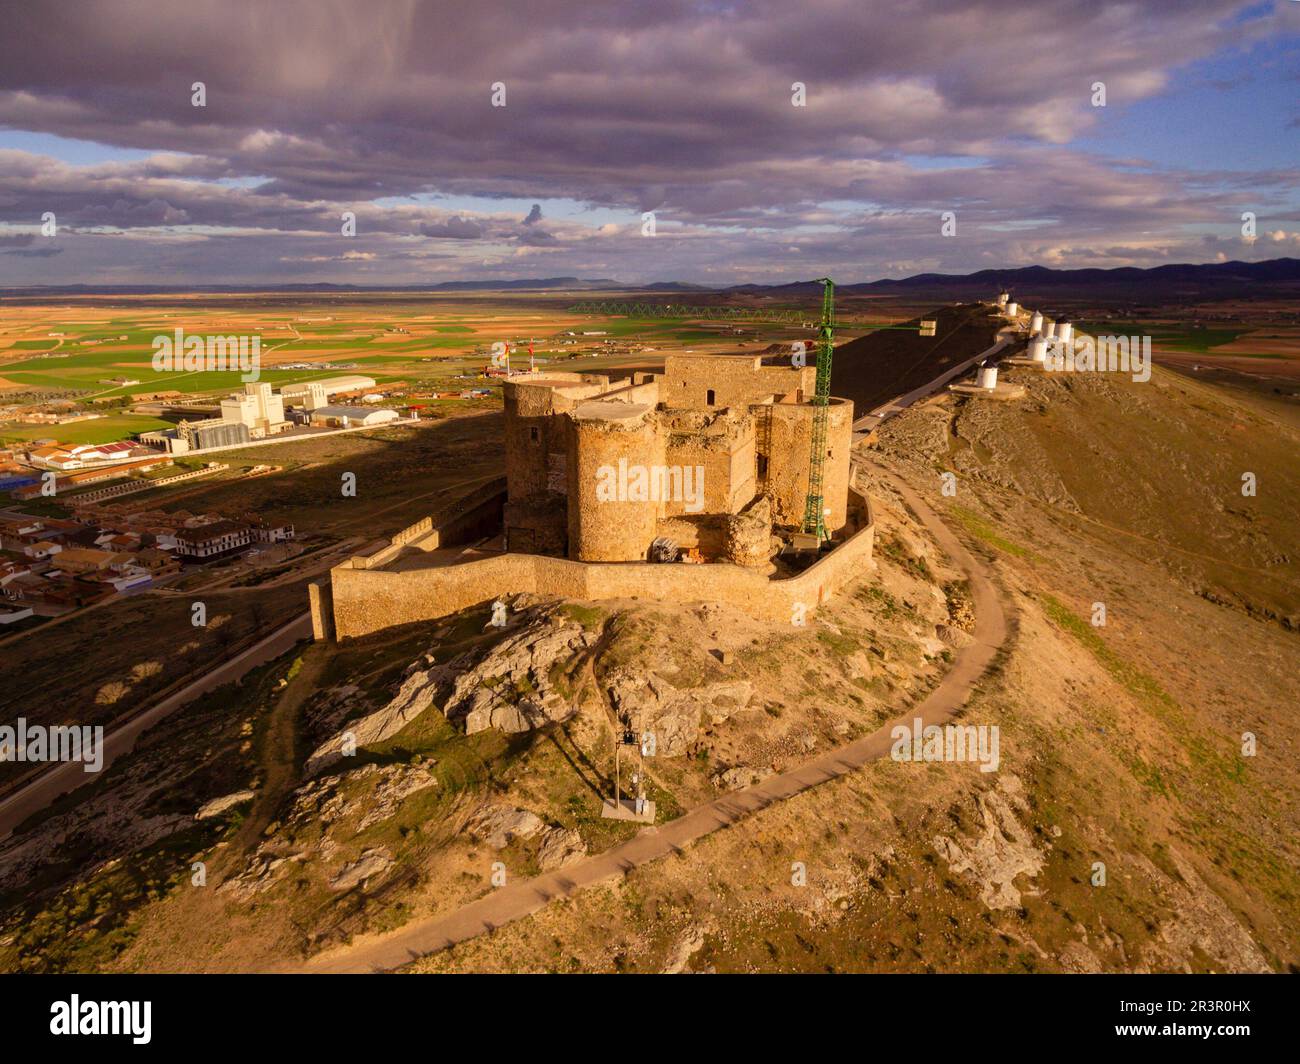 molinos de Consuegra con el castillo de la Muela al fondo, cerro Calderico, Consuegra, provincia de Toledo, Castilla-La Mancha, Spain. Stock Photo